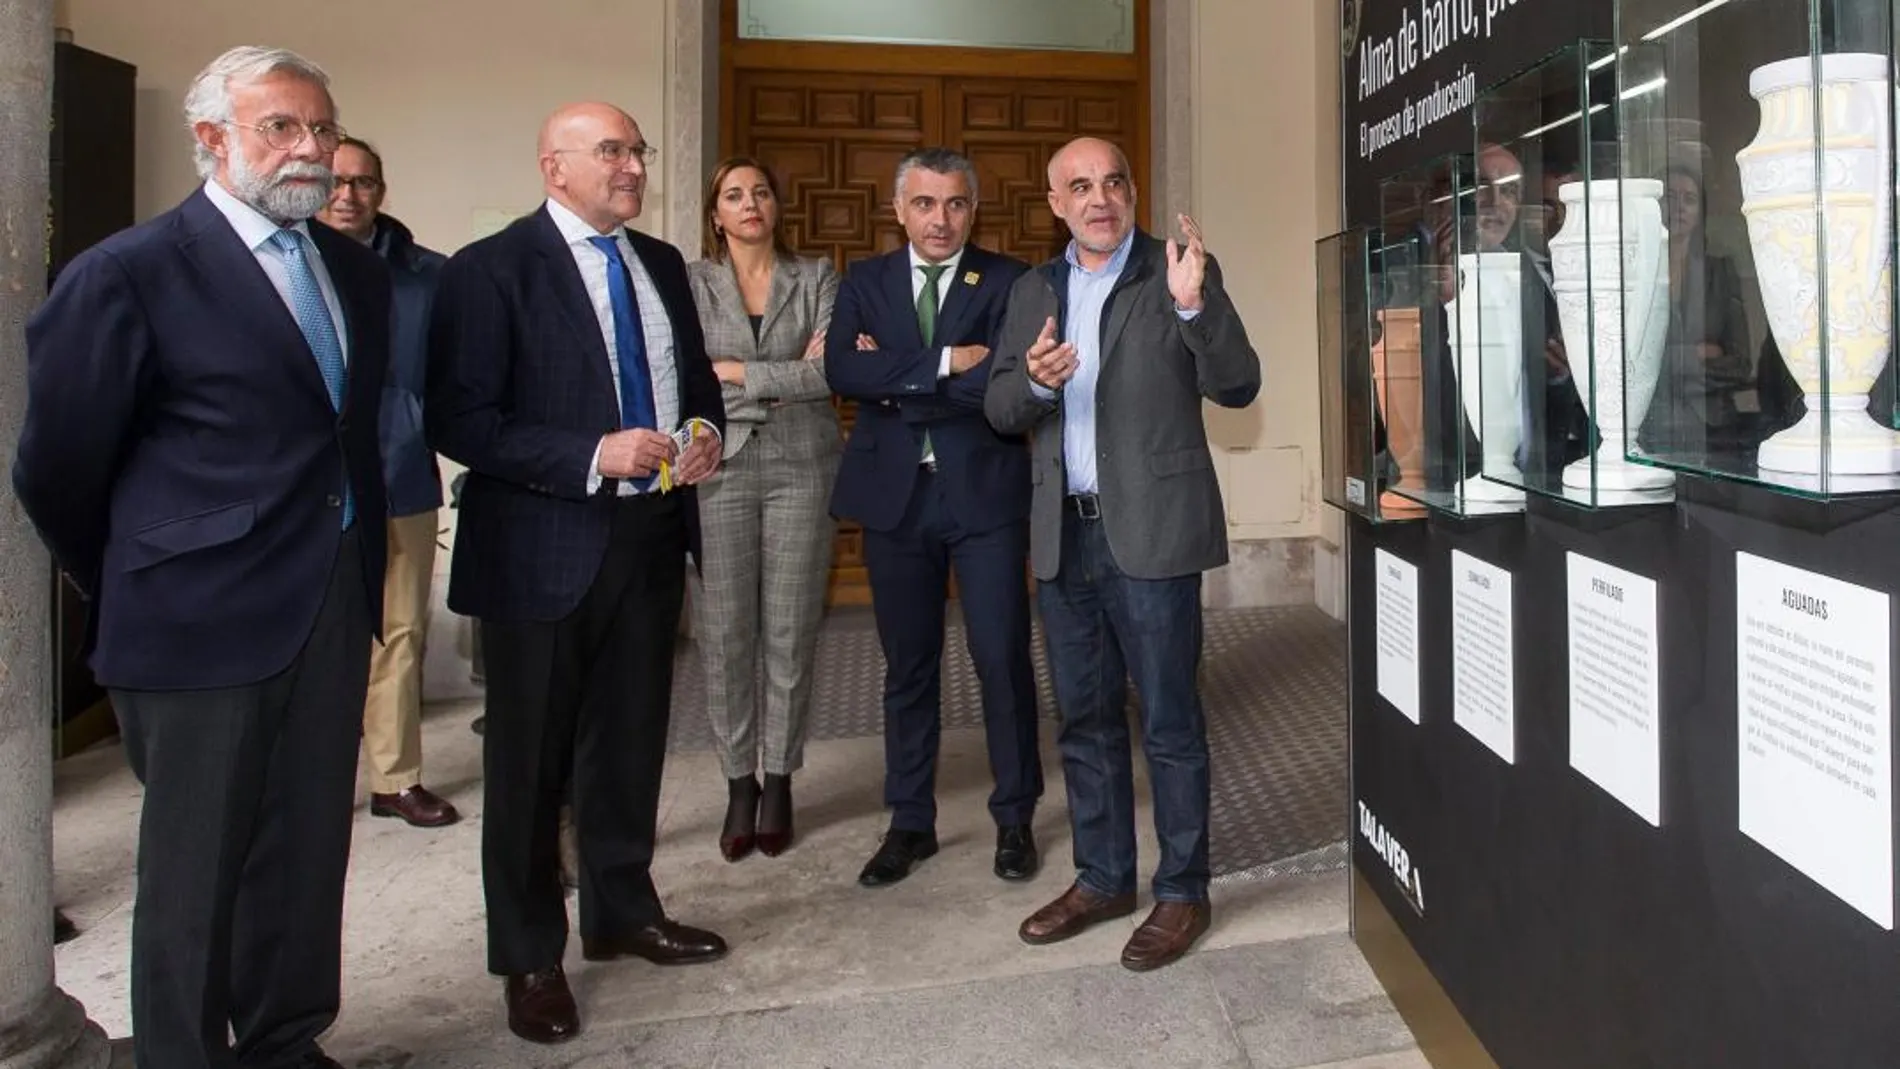 El presidente de la Diputación, Jesús Julio Carnero, y el alcalde de Talavera de la Reina, Jaime Ramos, inauguran la exposición Talavera Somos Cerámica